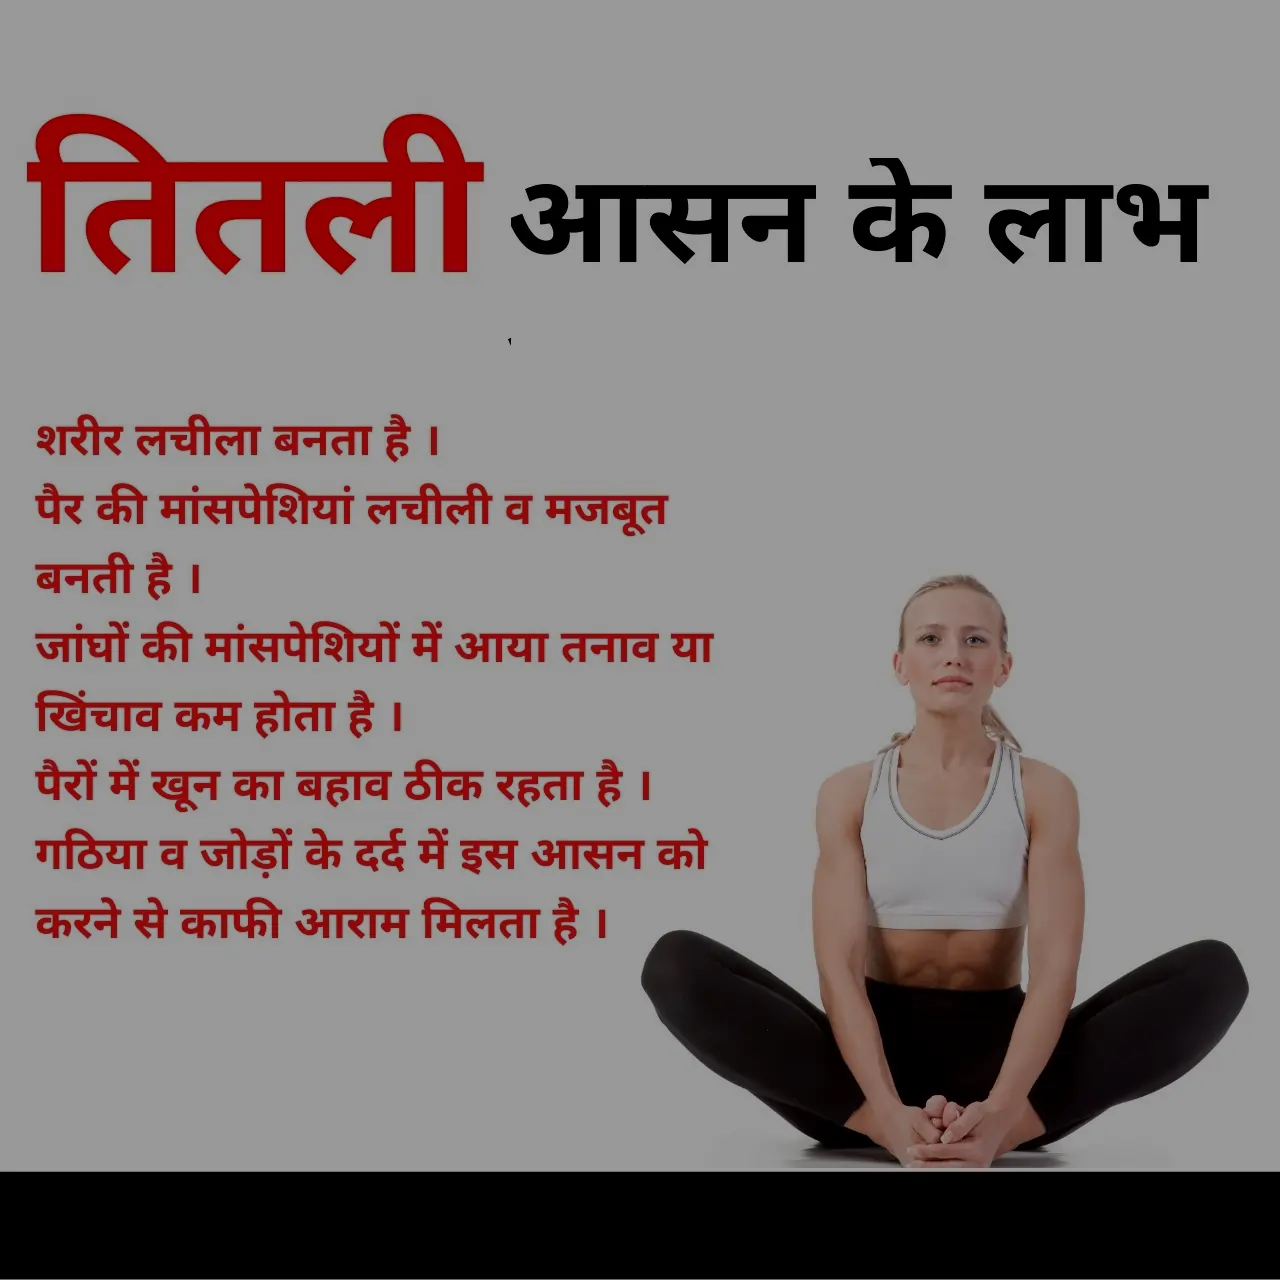 वज्रासन करने का तरीका और फायदे – Benefits of Vajrasana in Hindi